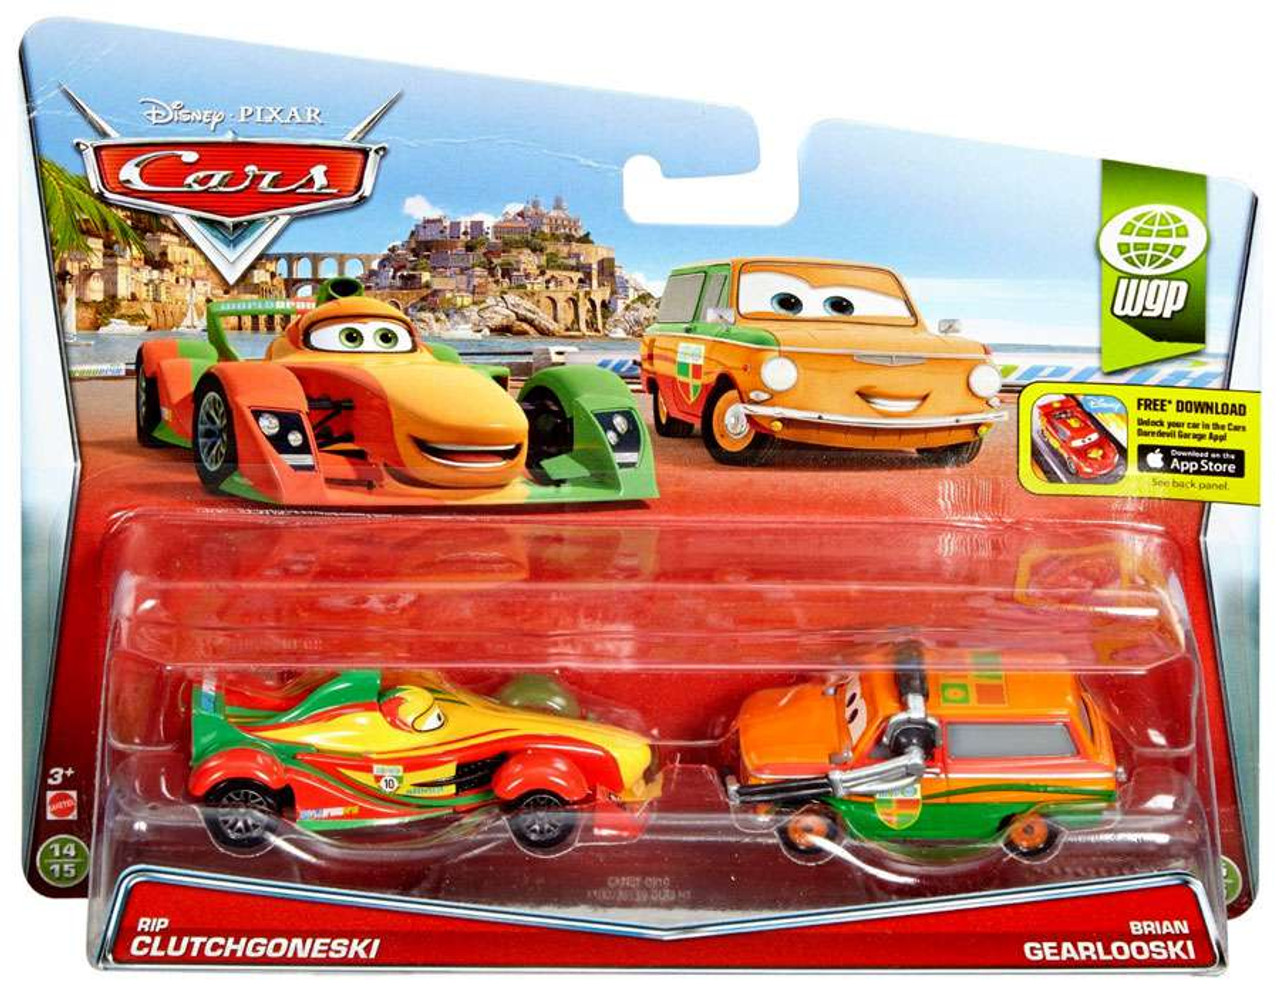 Тачки покупки. Тачки 2 игрушки Rip Clutchgoneski. Игрушки Disney Pixar cars Mattel. Mattel Disney Pixar cars 3. Тачки 2 трип Обгонетски.